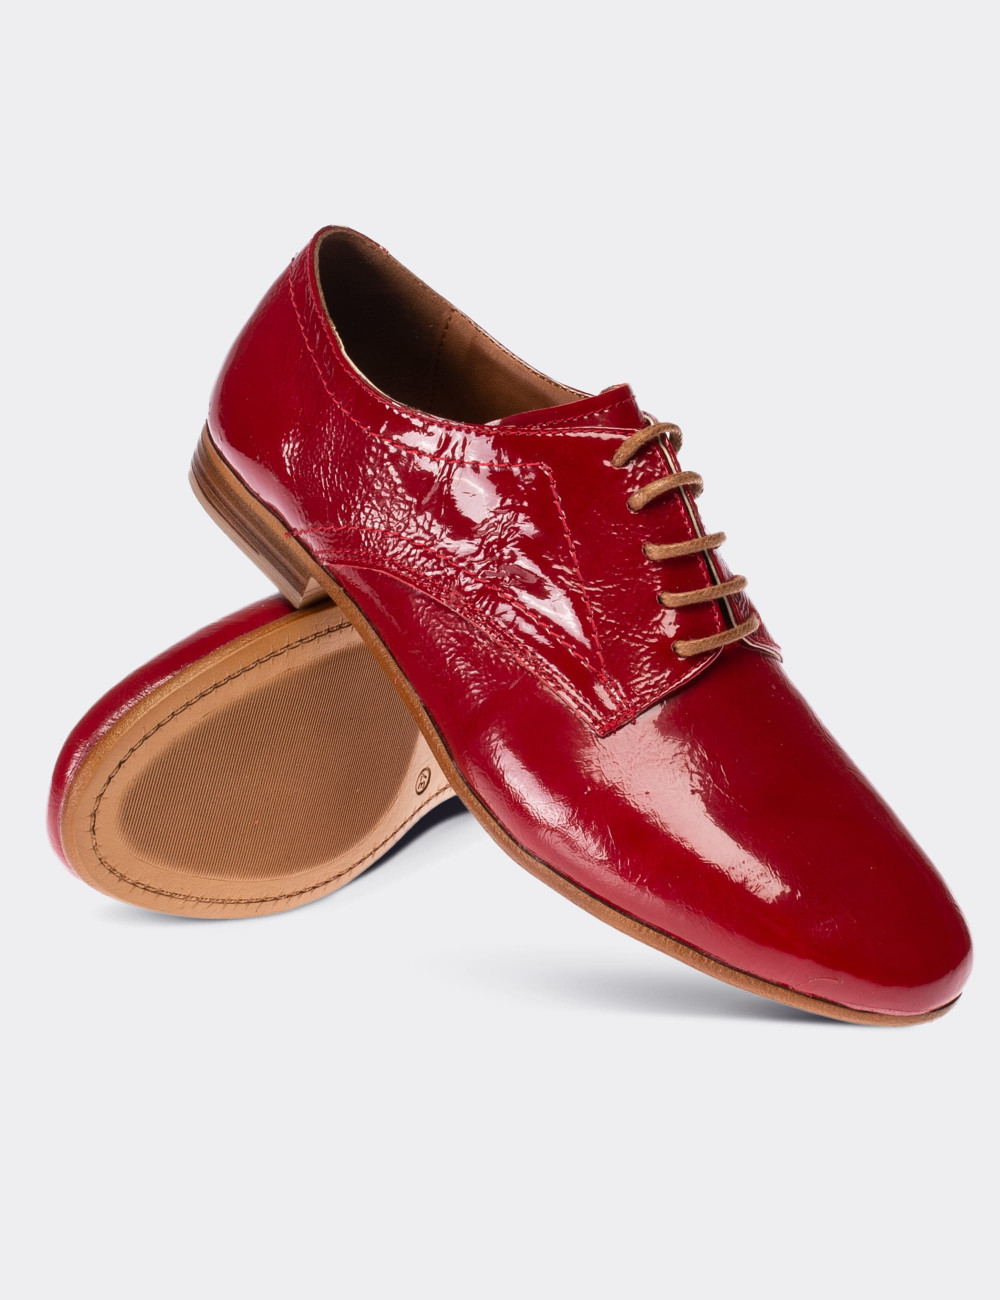 Hakiki Rugan Kırmızı Günlük Kadın Ayakkabı - 01430ZKRMC02